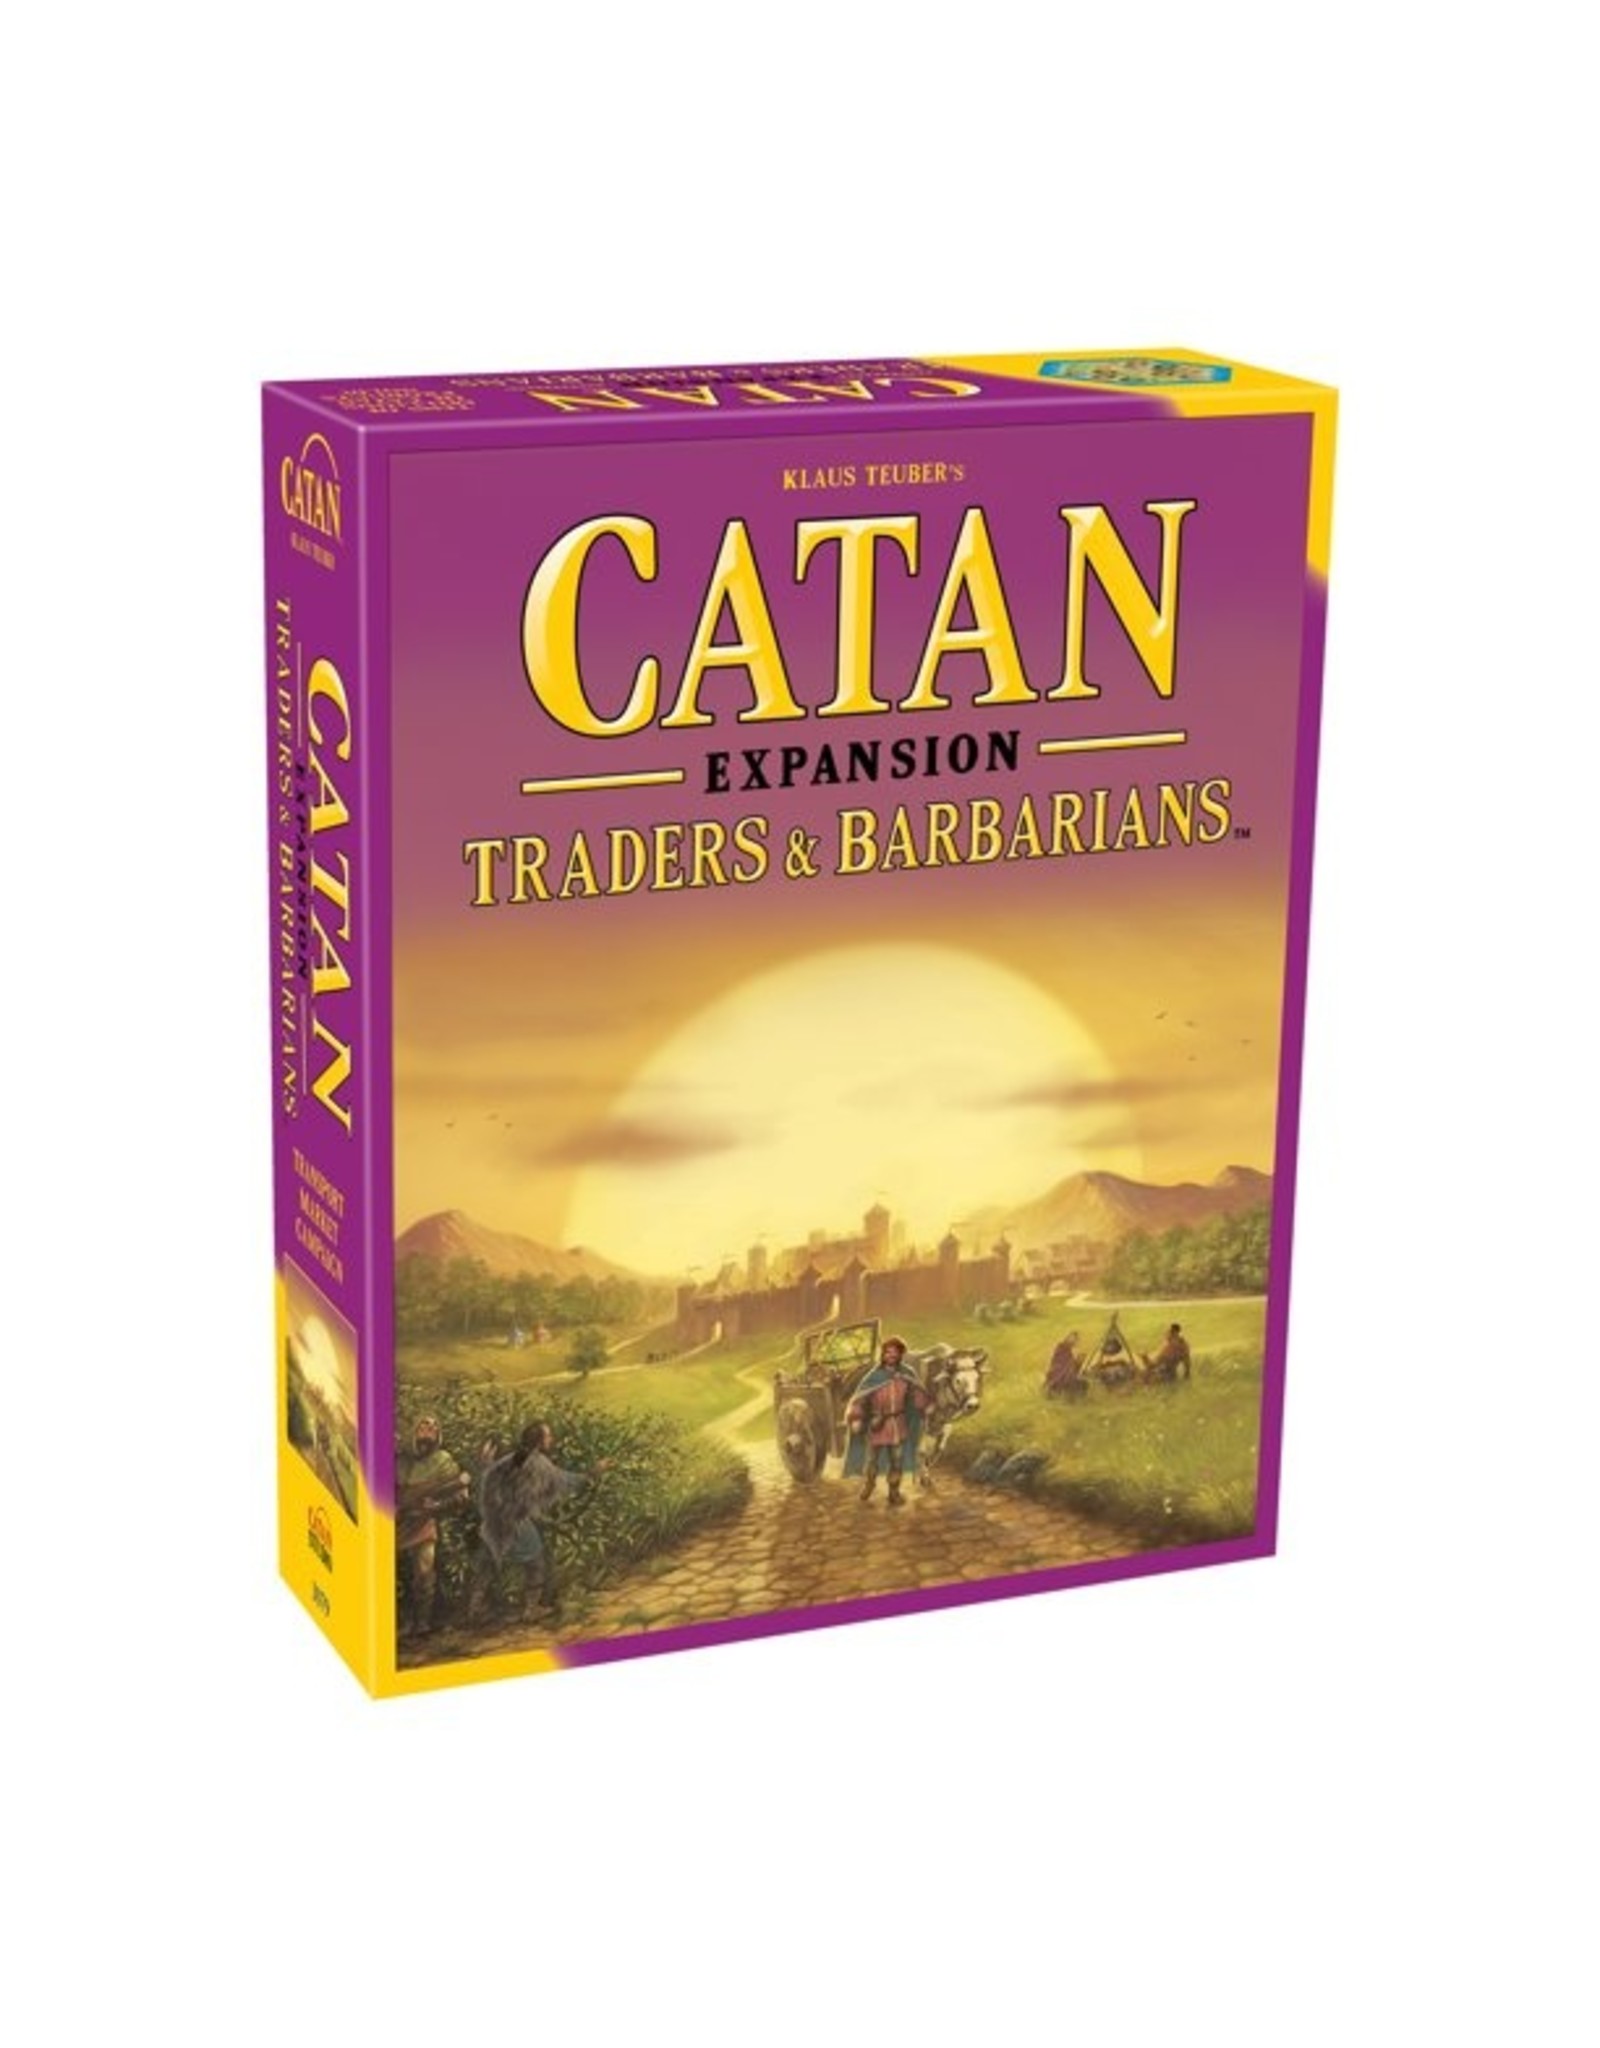 Catan Expansion Traders & Barbarians